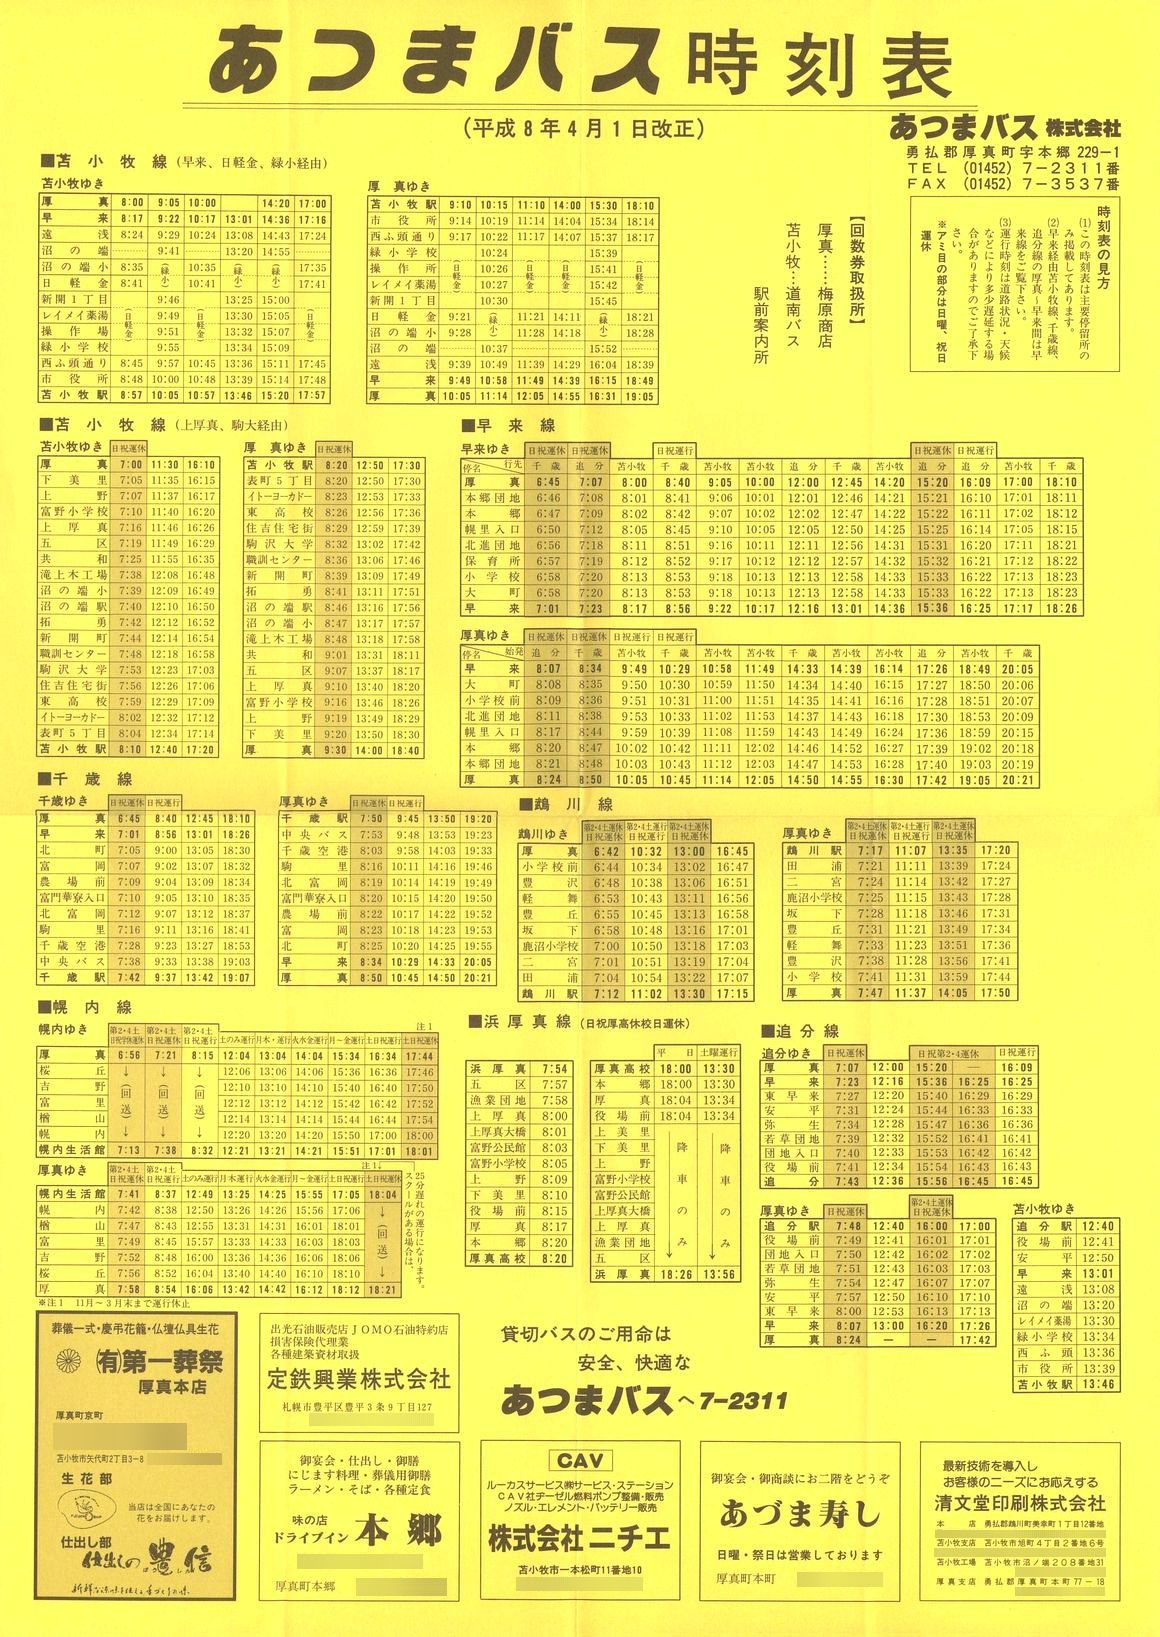 1996-04-01改正_あつまバス_時刻表